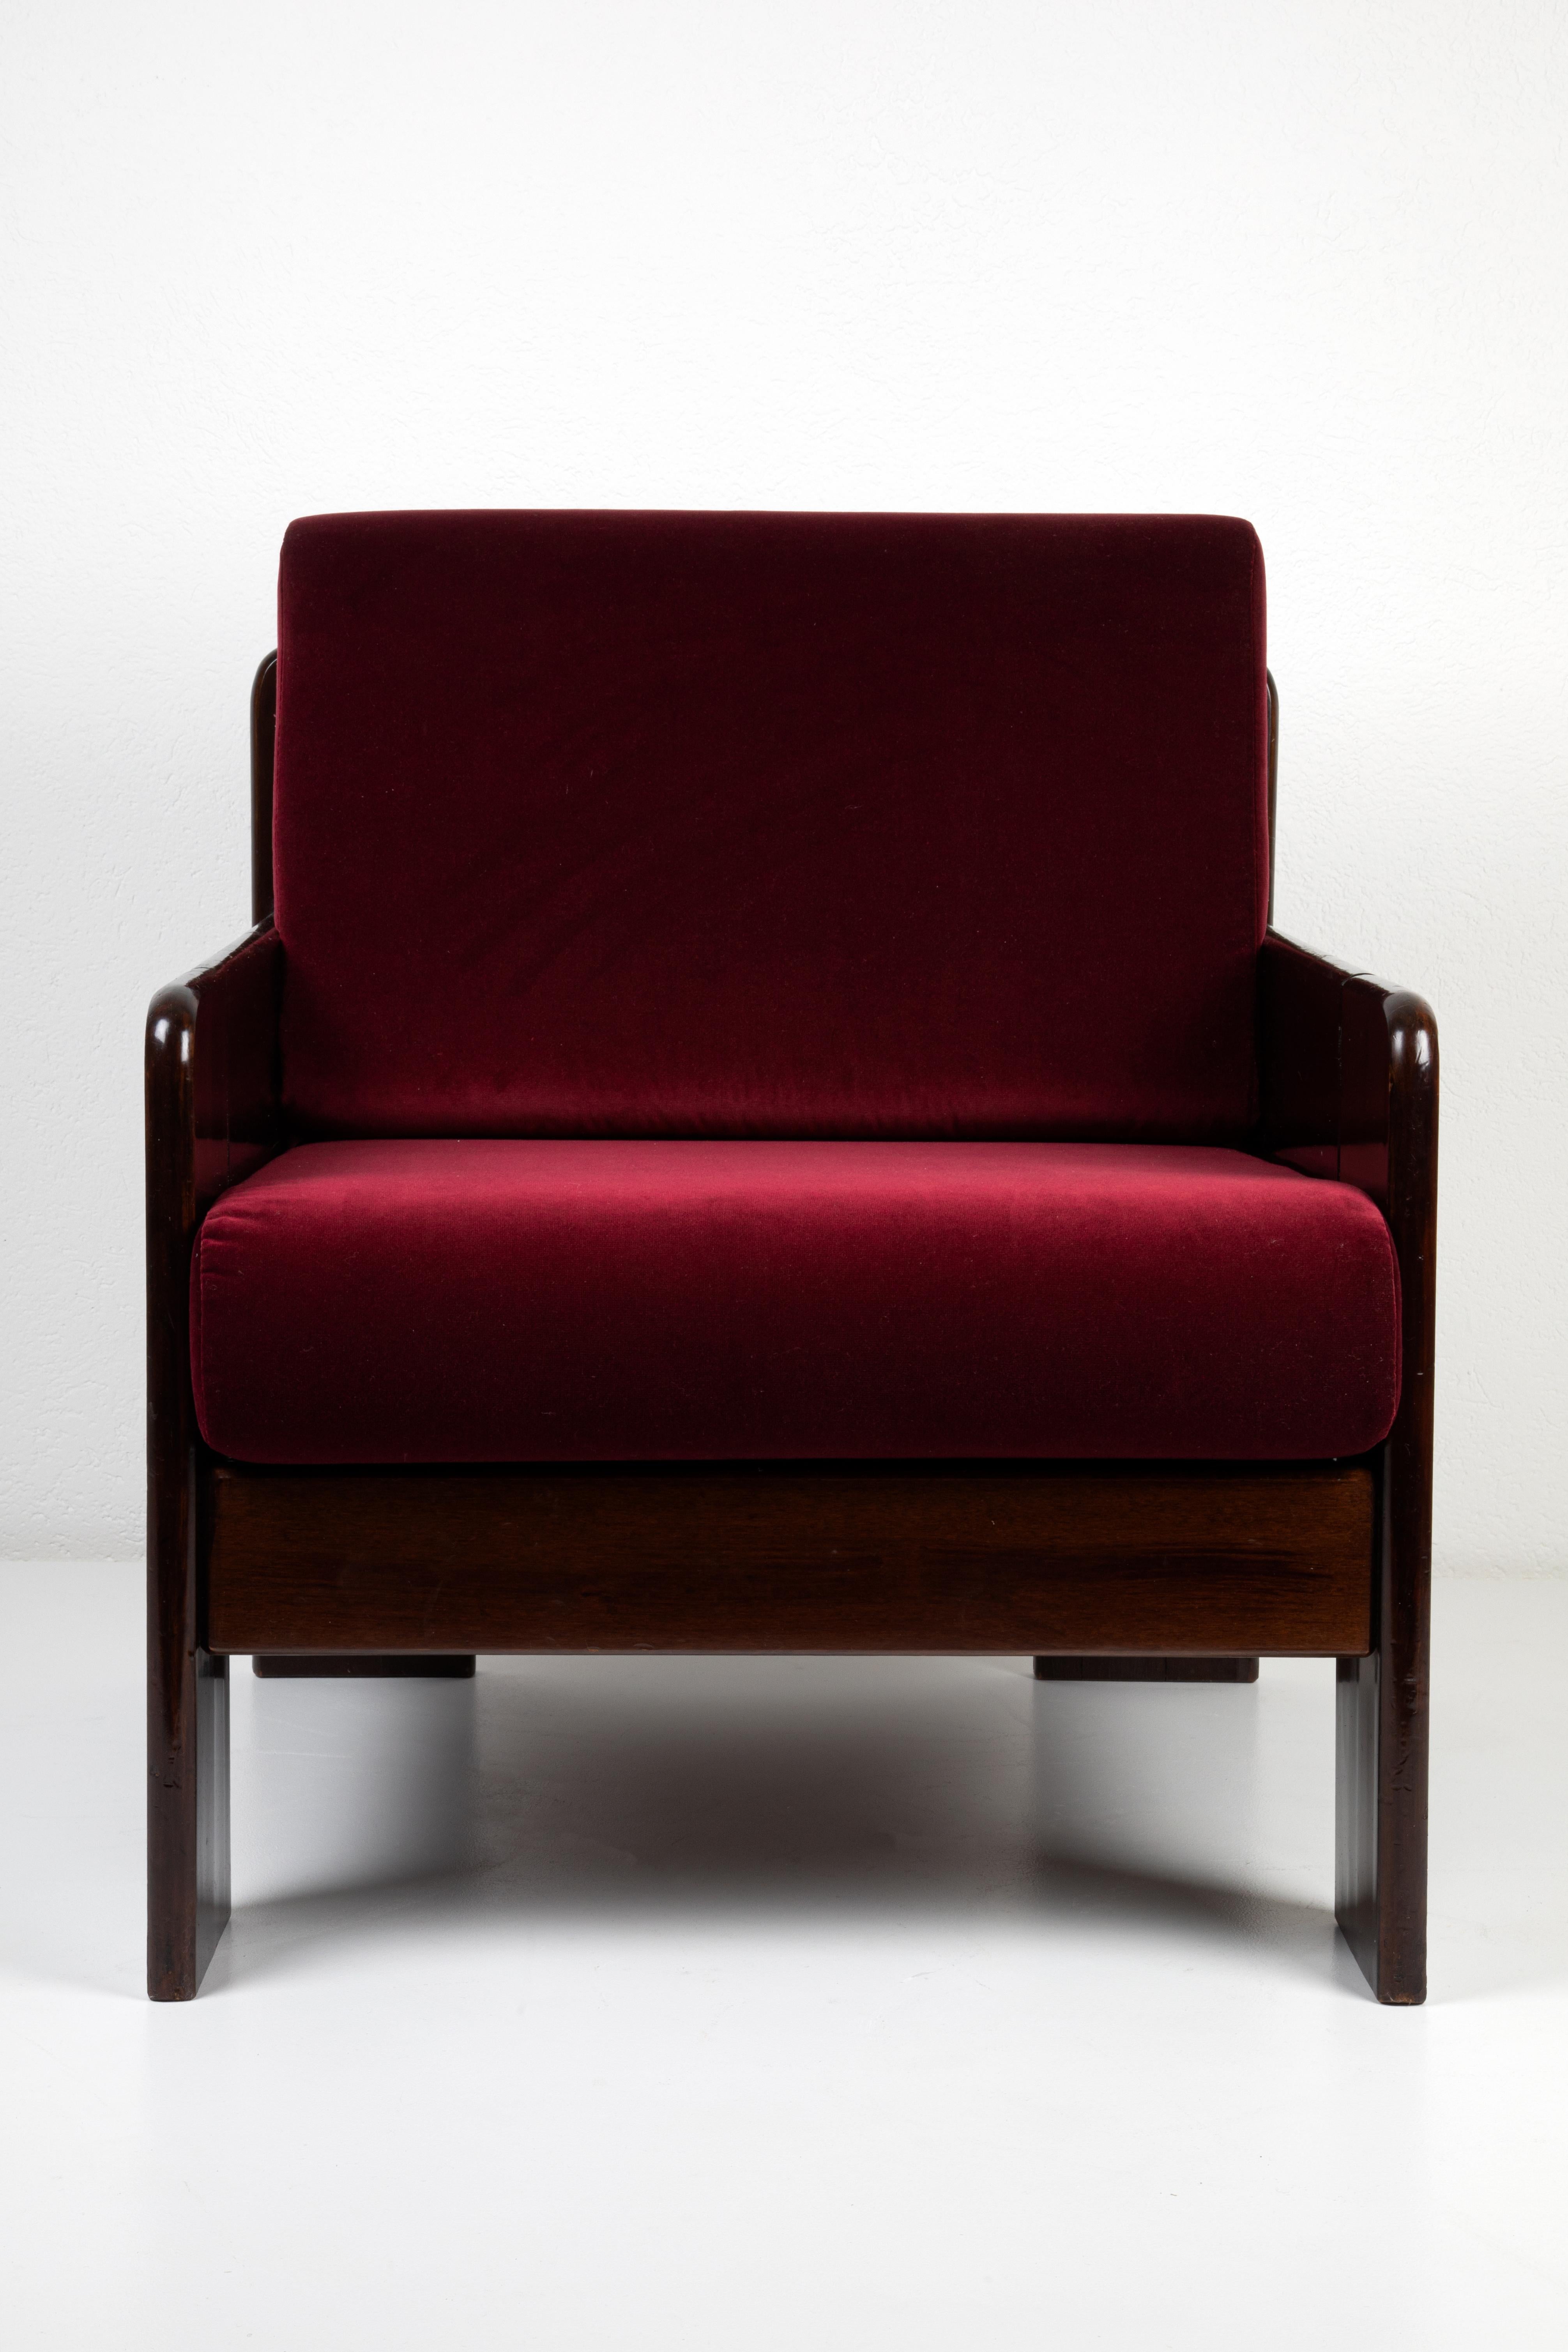 Fabriqué en Italie dans les années 1970, ce magnifique ensemble de fauteuils a probablement été inspiré par les fauteuils Bastiano d'Afra & Tobia Scarpa. Son bois laqué a été restauré mais présente encore quelques légères éraflures. Les coussins en